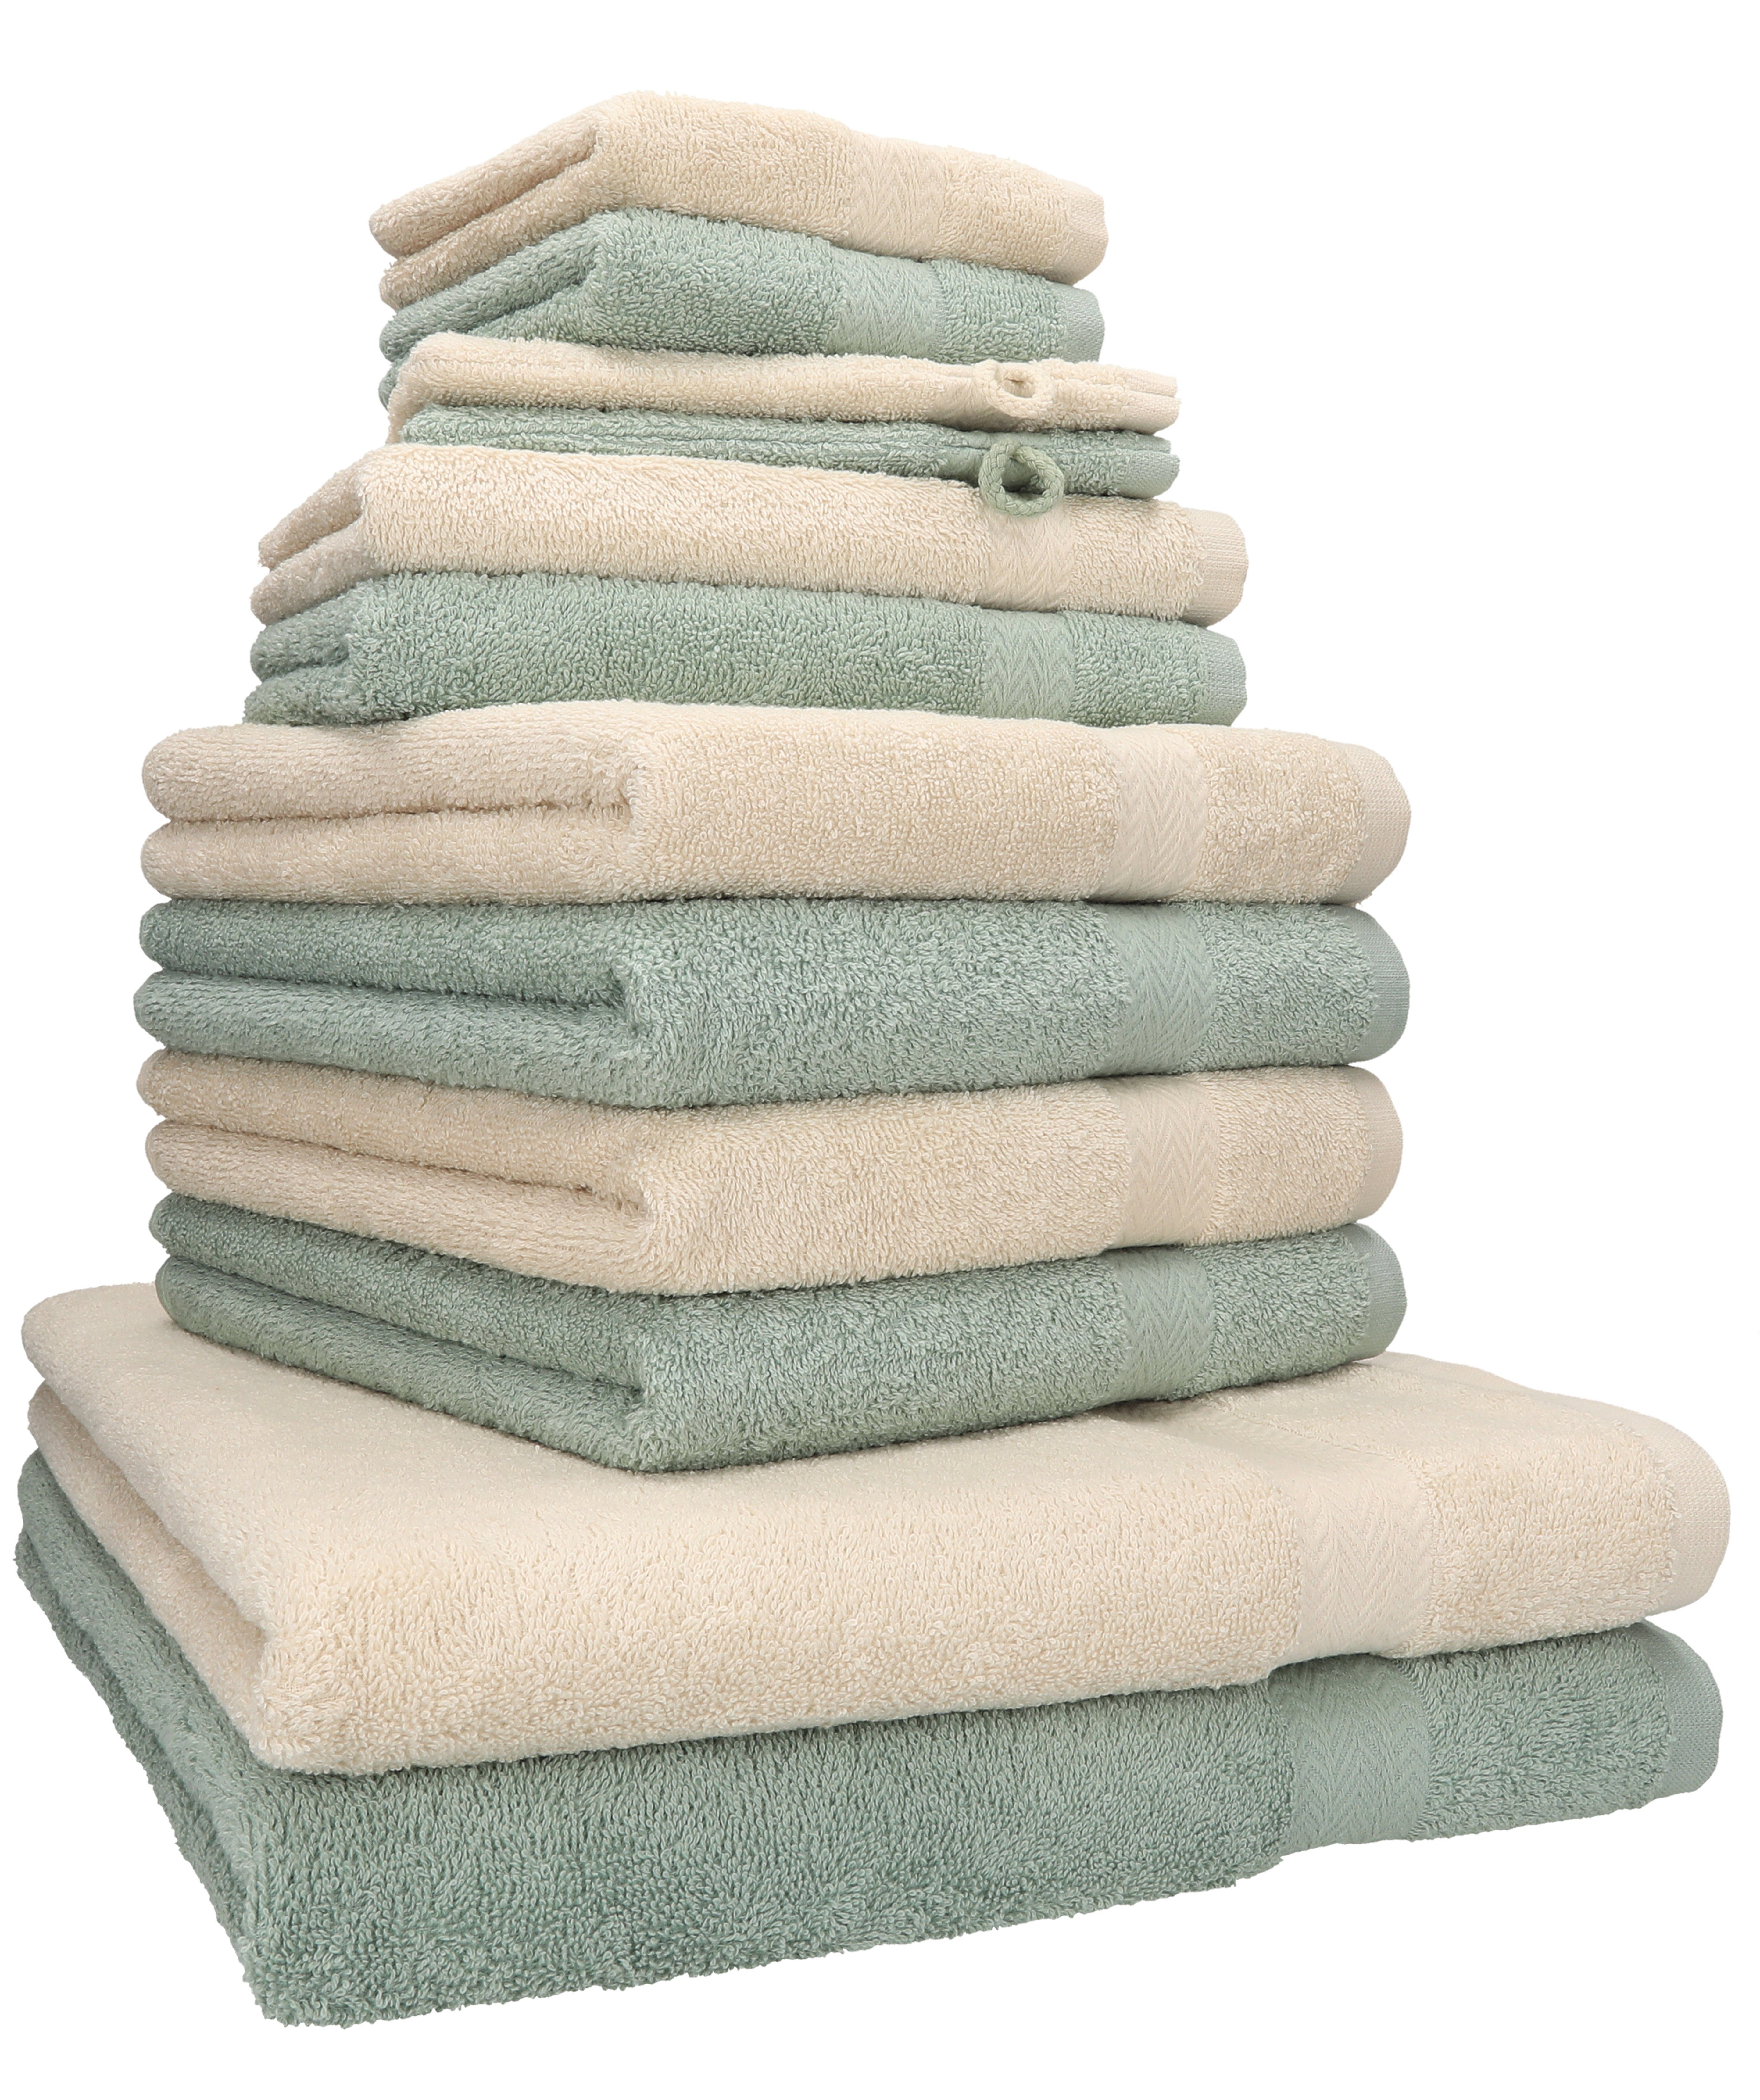 Betz Handtuch Set Handtuch (12-tlg) Set Farbe Sand/heugrün, Baumwolle, 12-tlg. 100% Premium